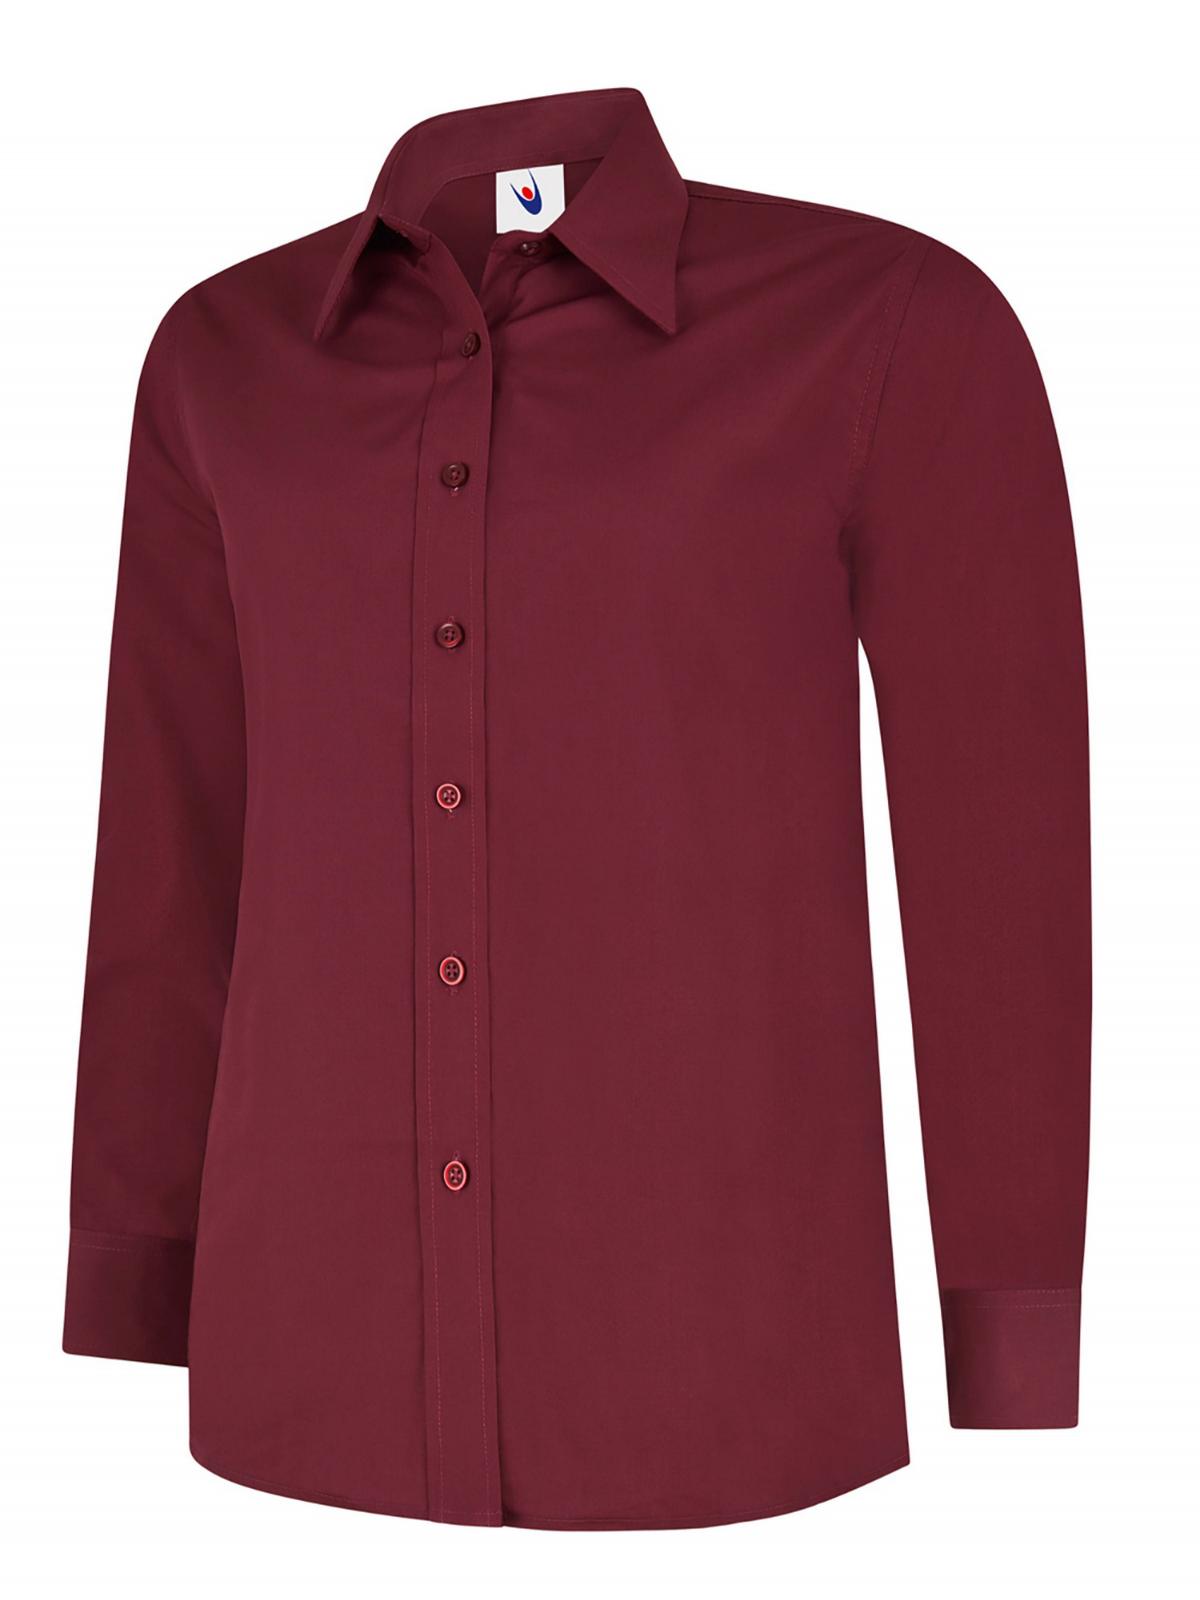 Uneek Ladies Poplin Full Sleeve Shirt UC711 - Burgundy